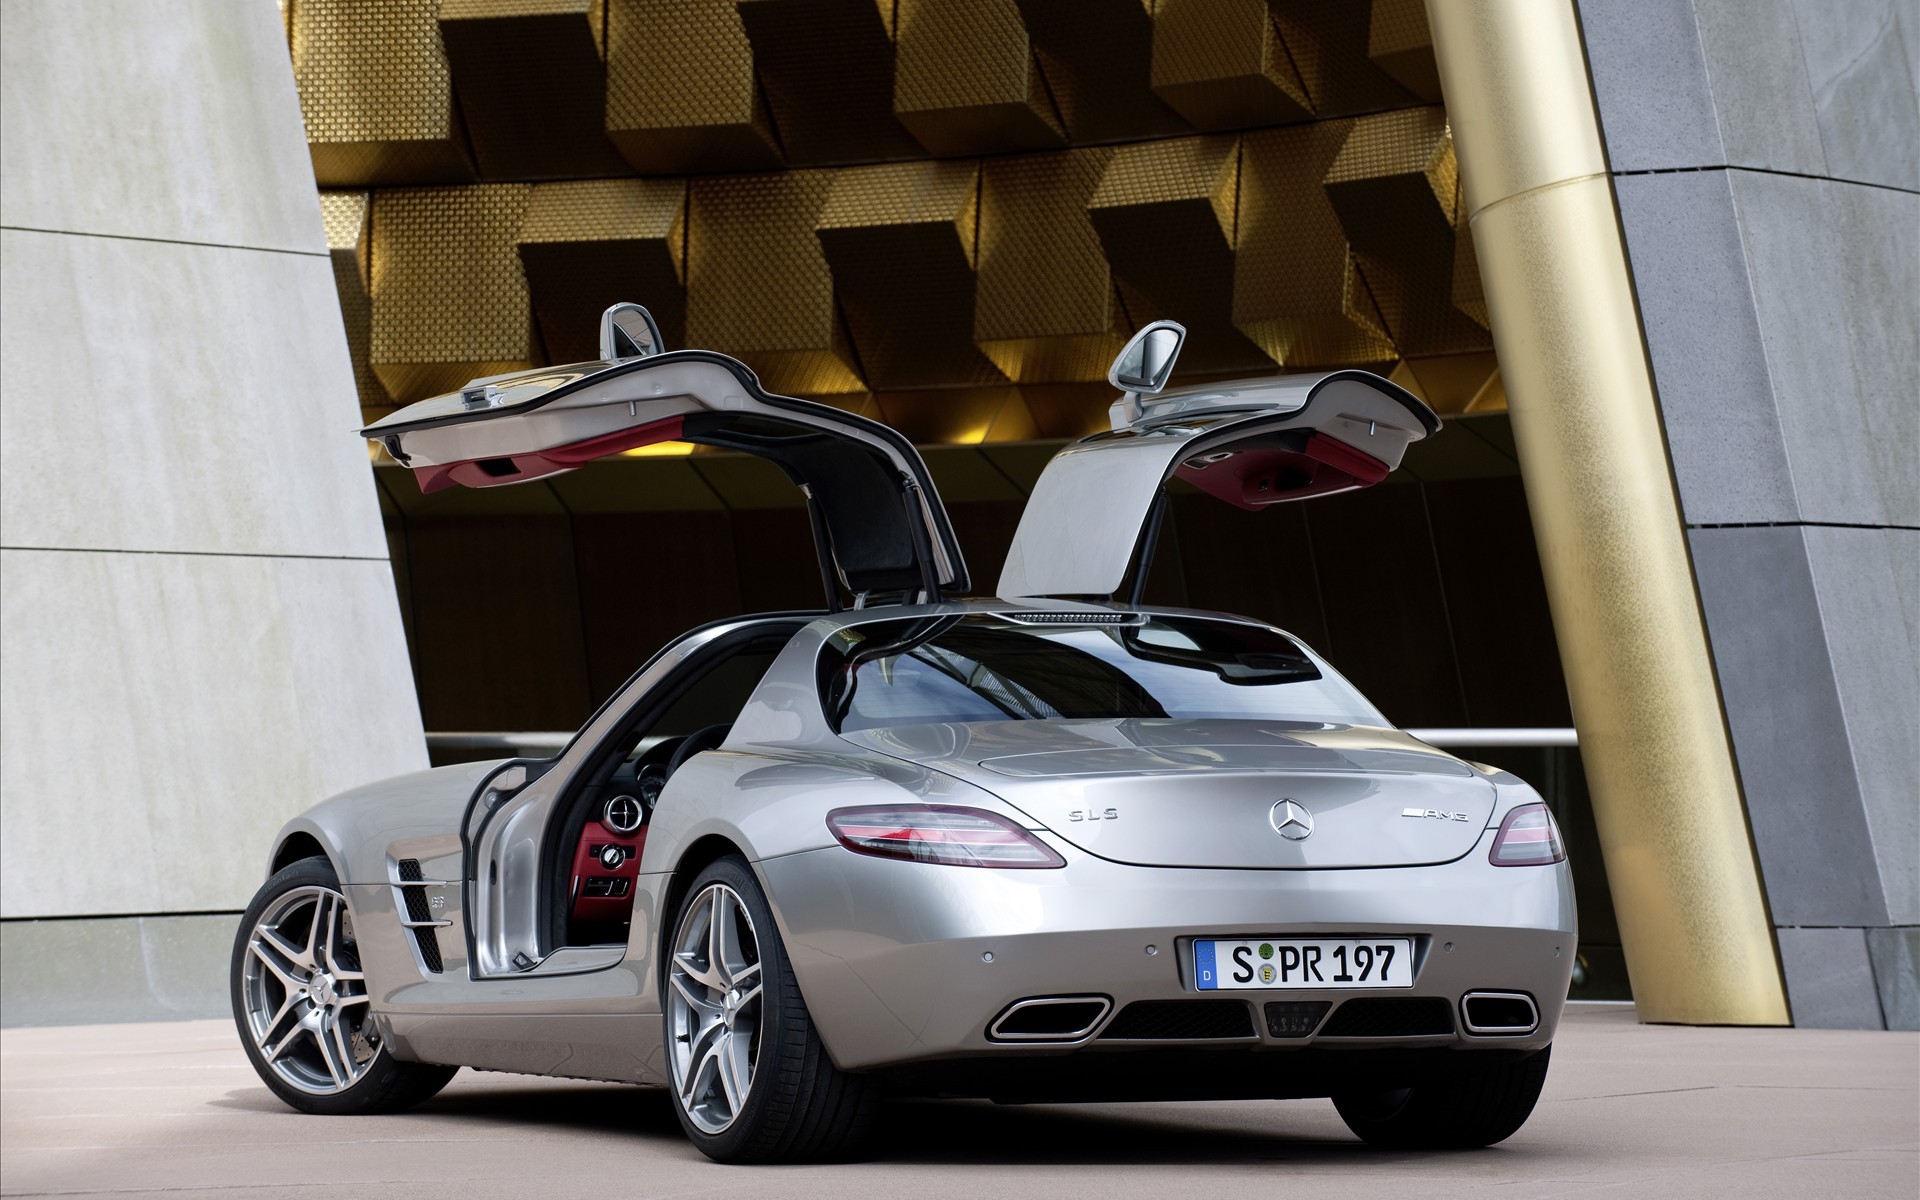 автомобили, транспортные средства, Mercedes- Benz SLS AMG E-Cell - обои на рабочий стол